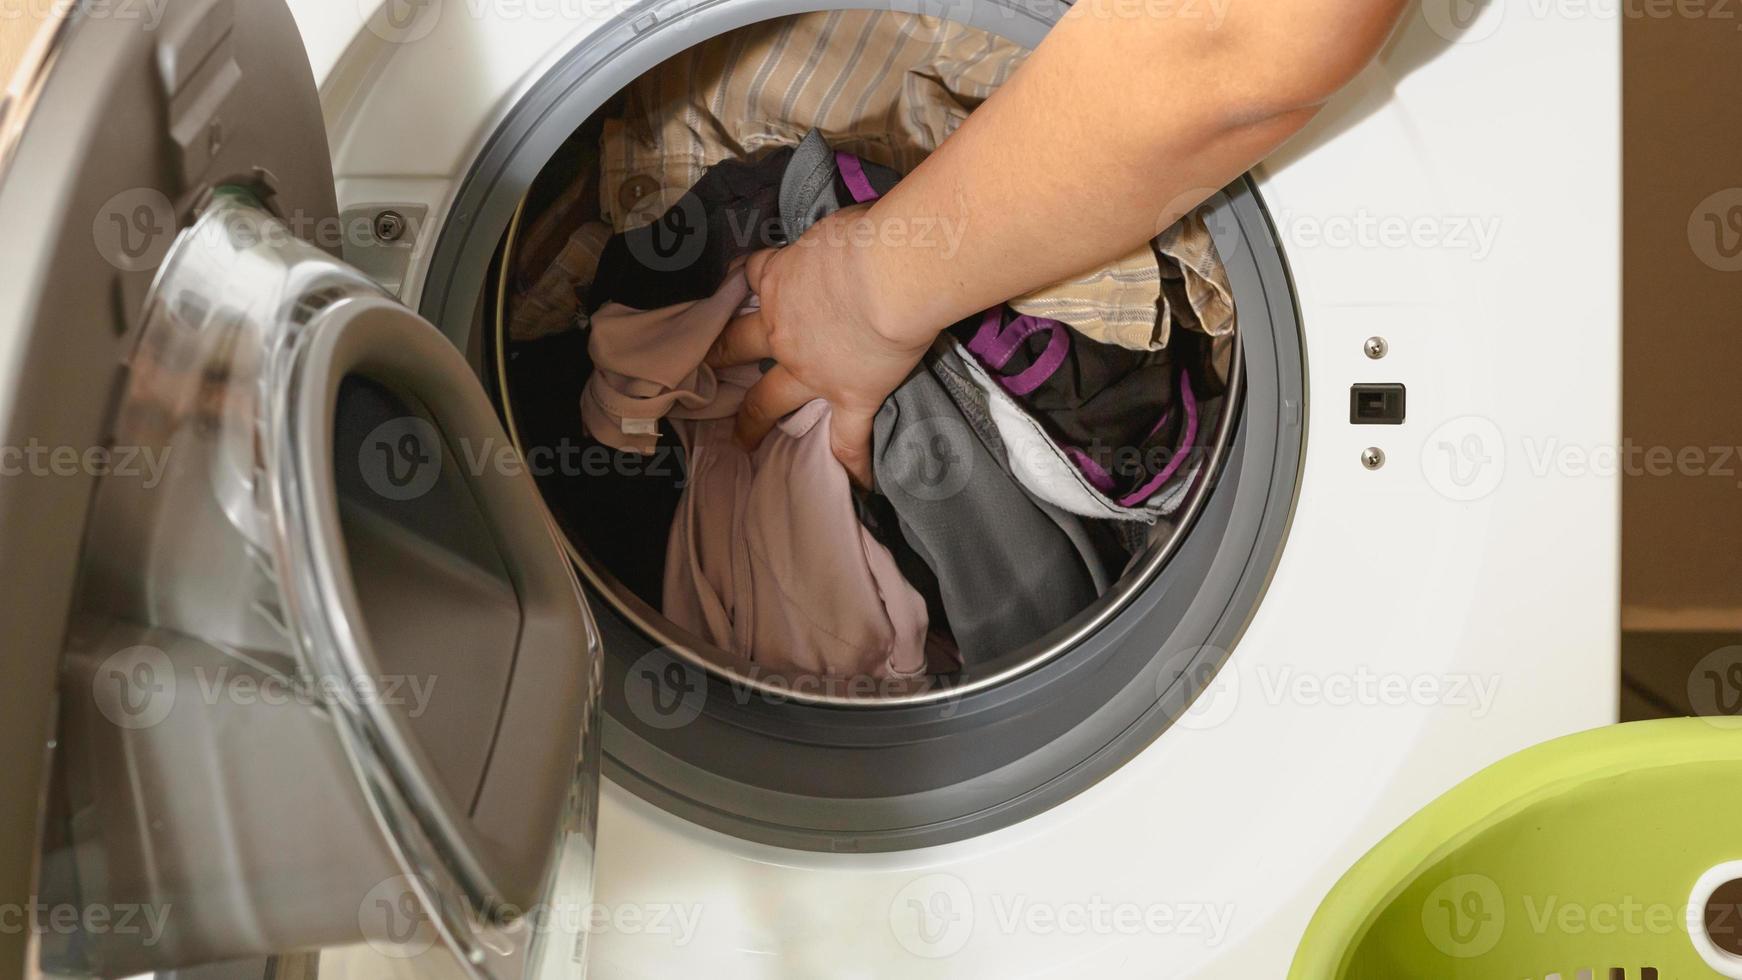 gros plan sur la main d'une femme mettant des vêtements sales dans la machine à laver. photo